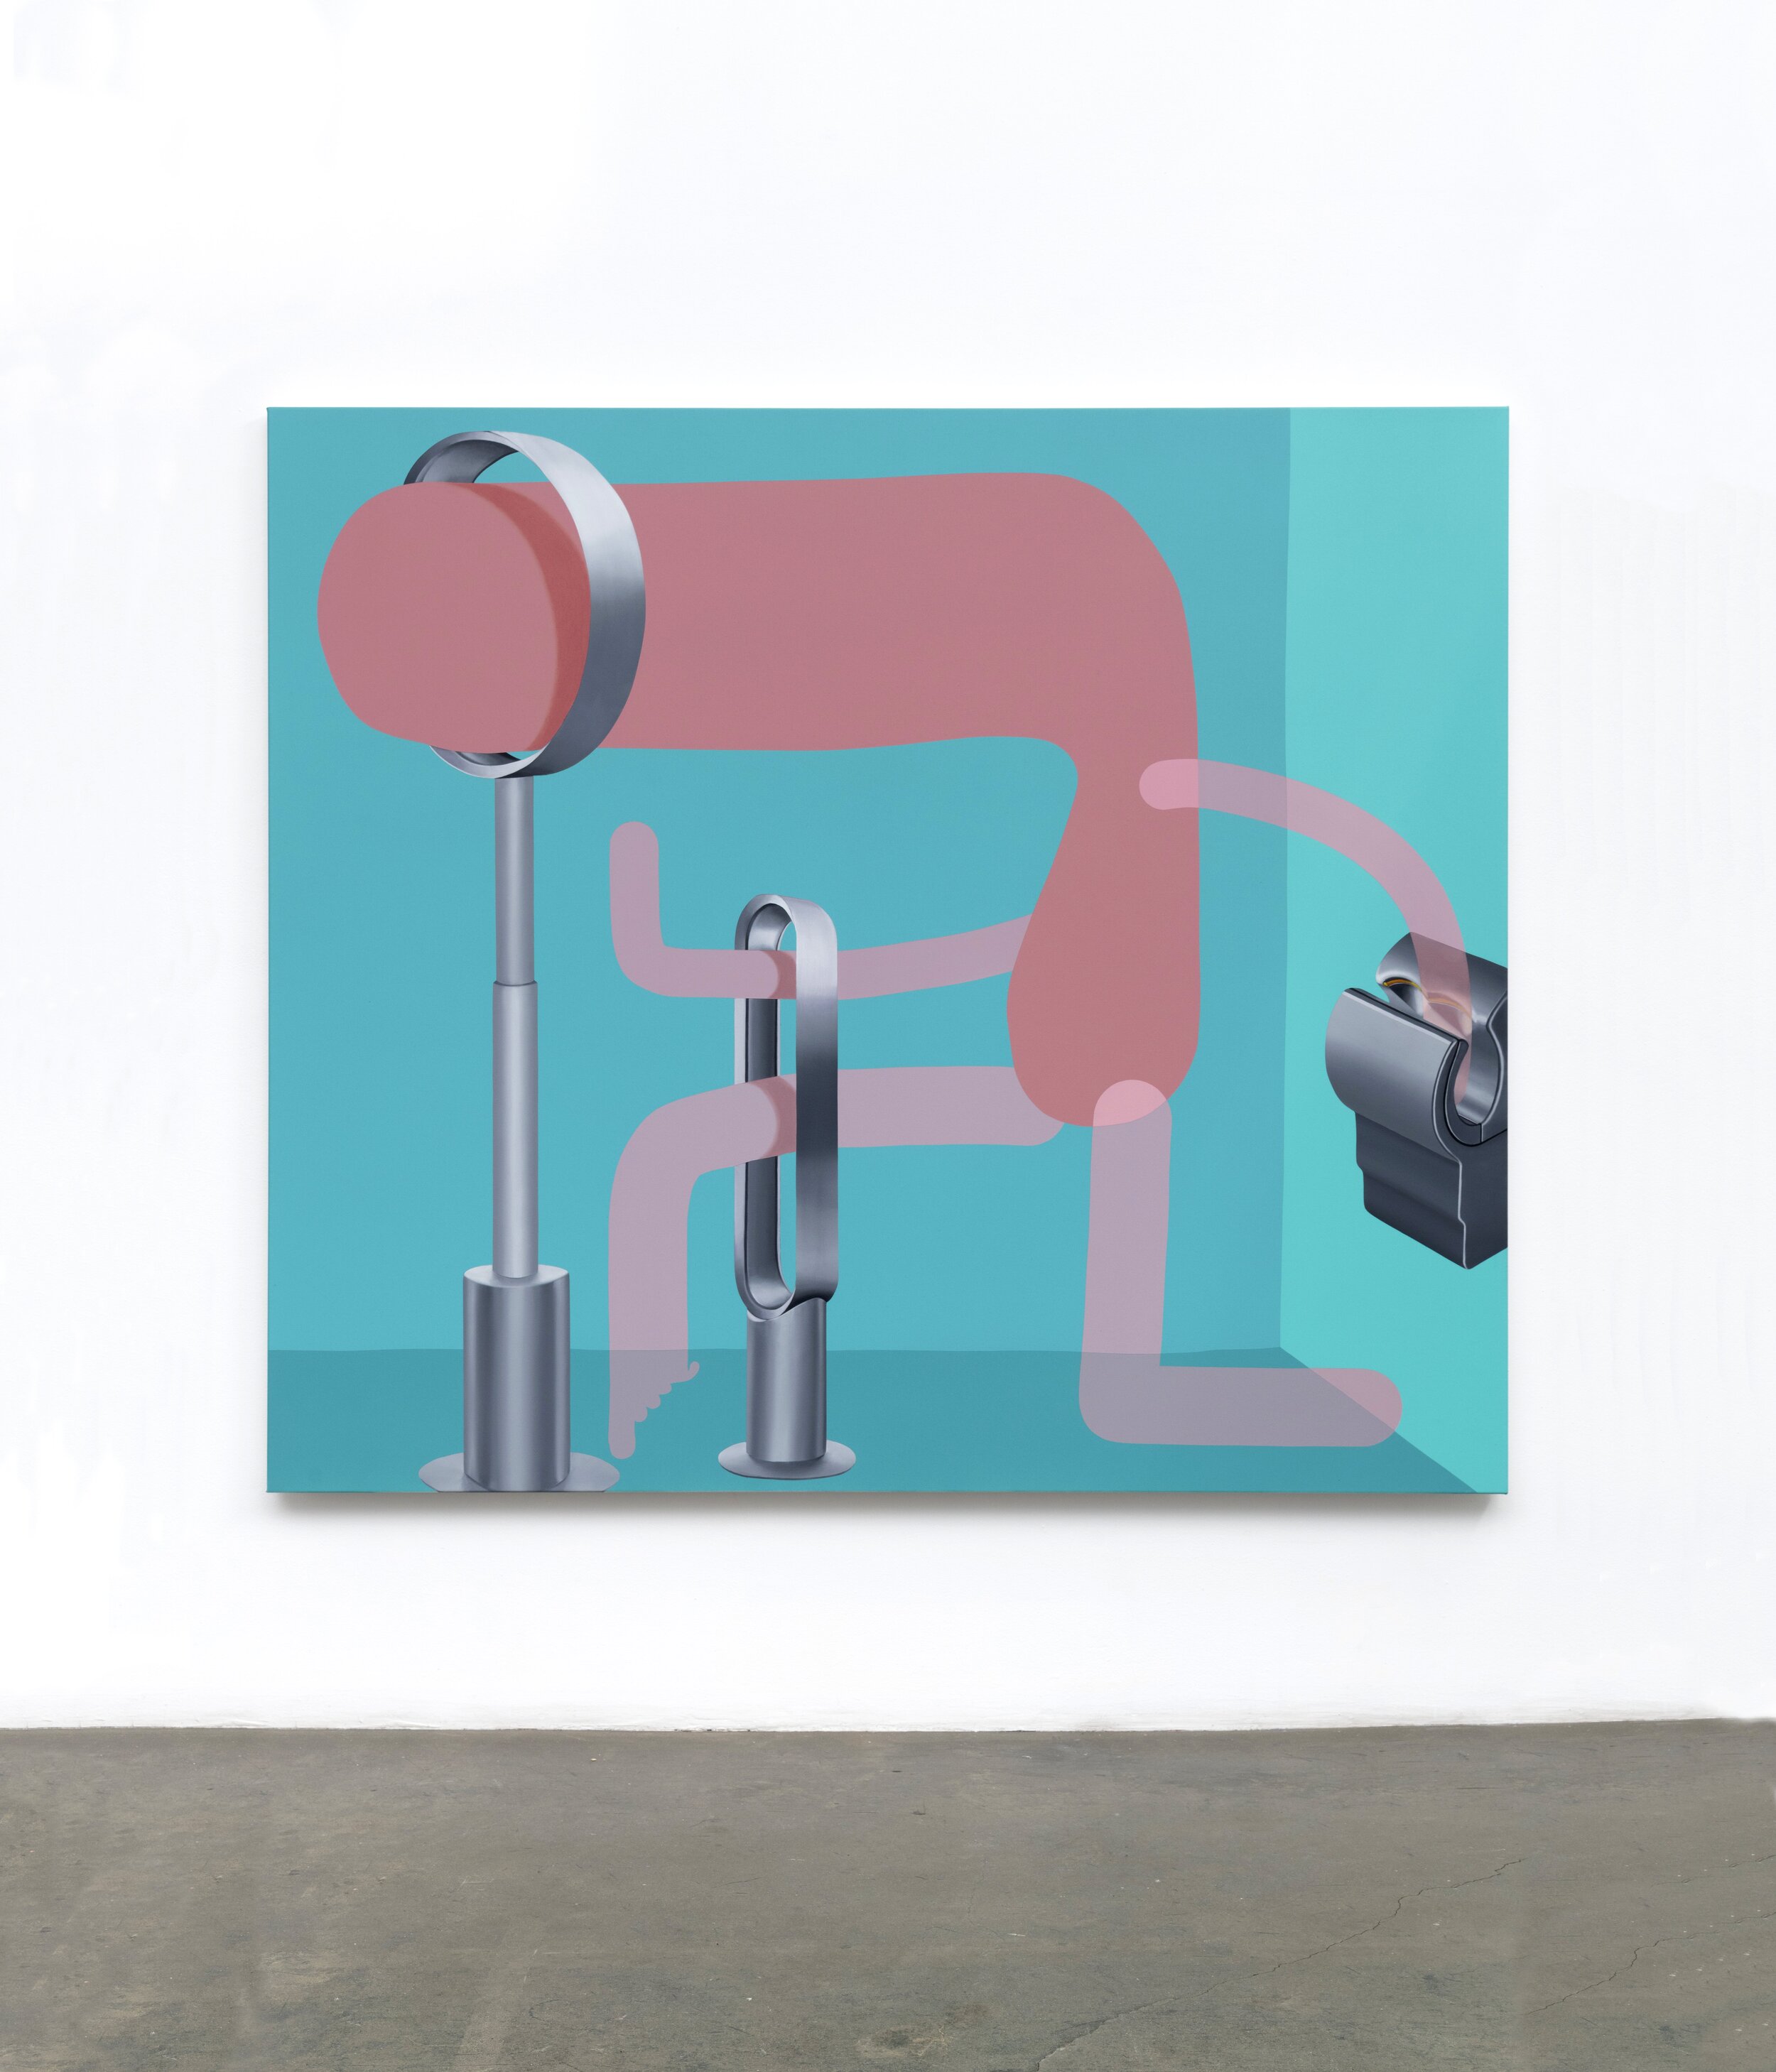 'Germaphobe', 2019, oil and acrylic on canvas, 200cm x 175cm